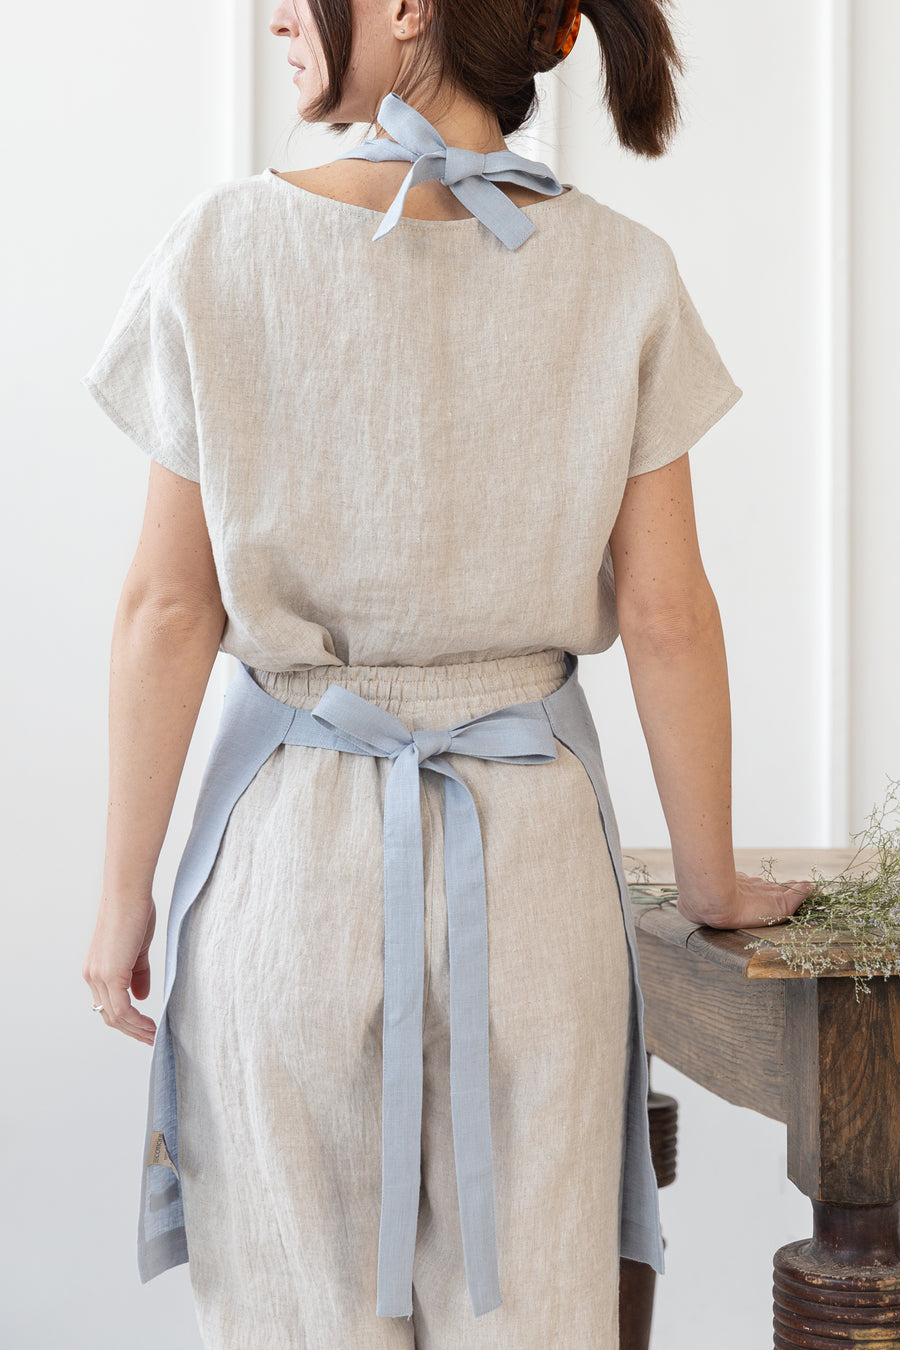 Natural Light  linen apron - Linen Couture Boutique